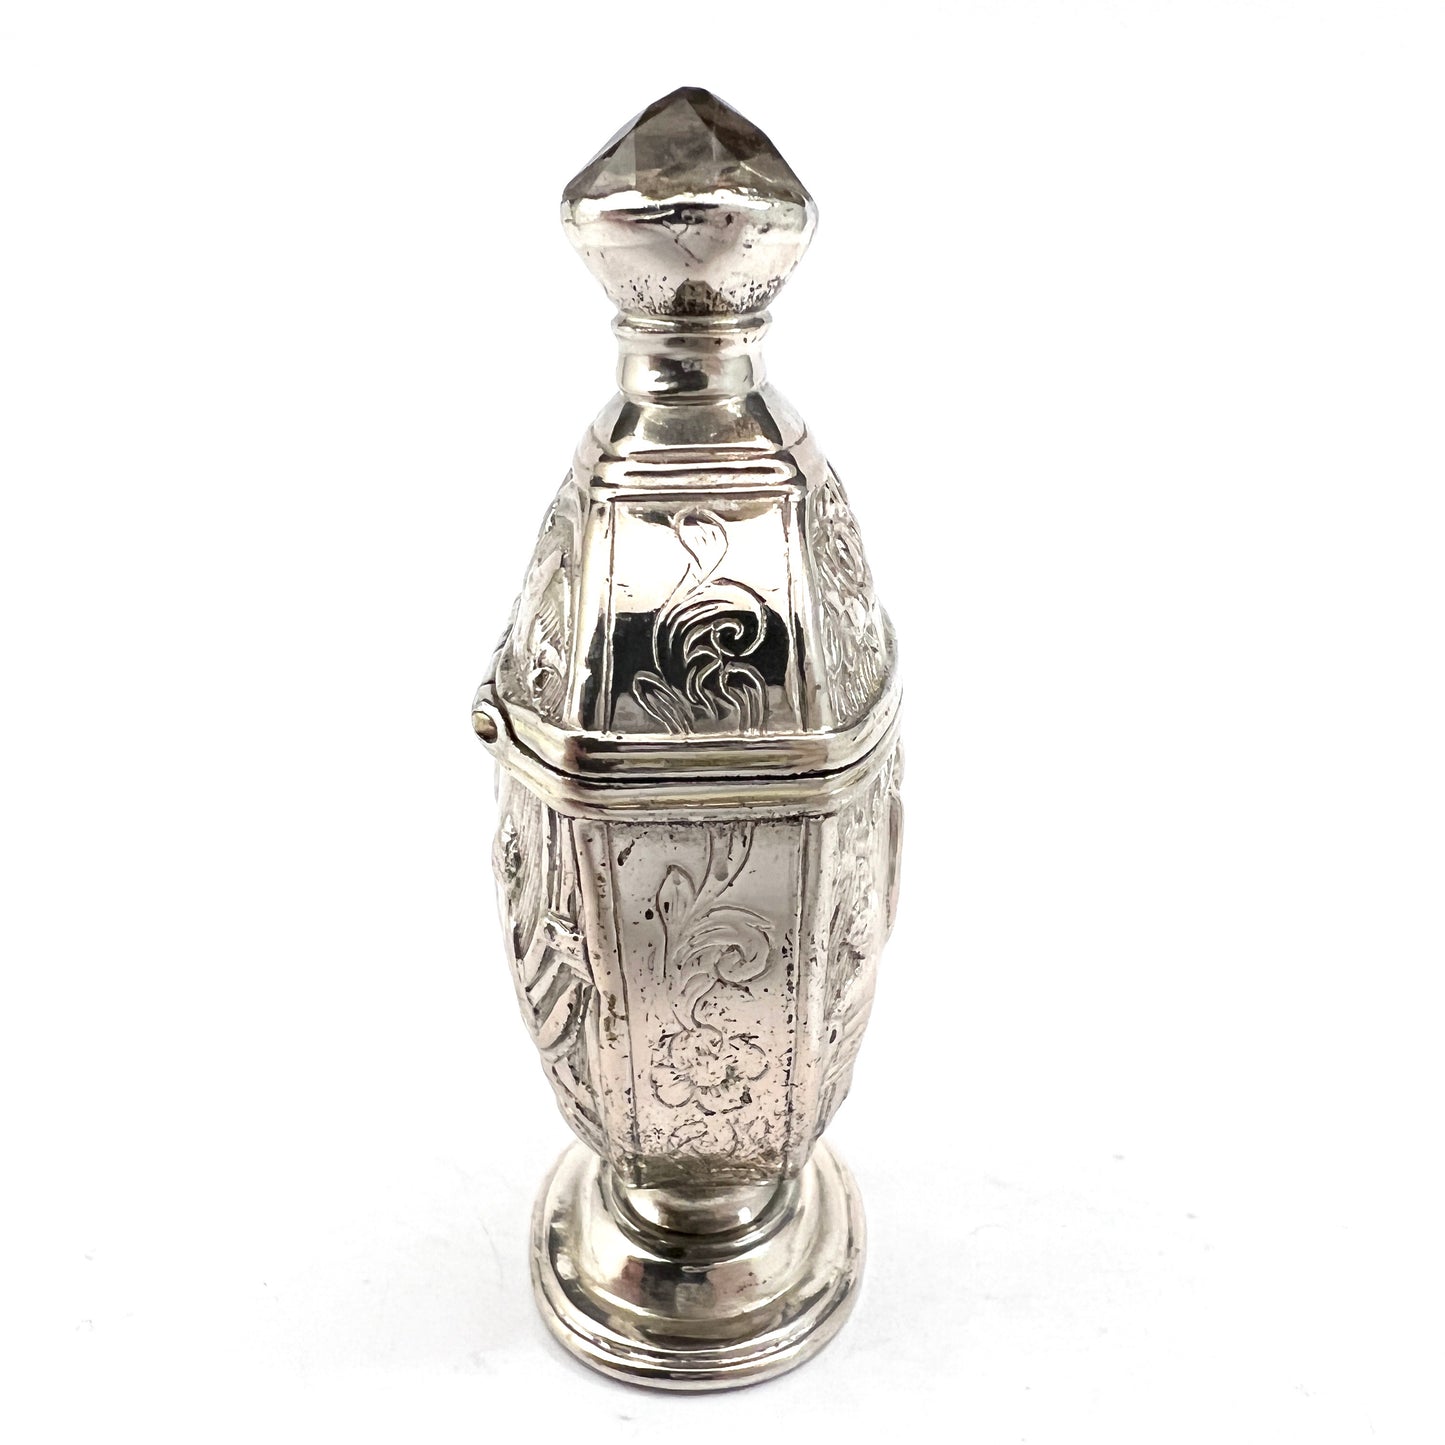 Antique late 1700s Georgian Solid Silver Foil Back Paste Table Vinaigrette Scent Bottle